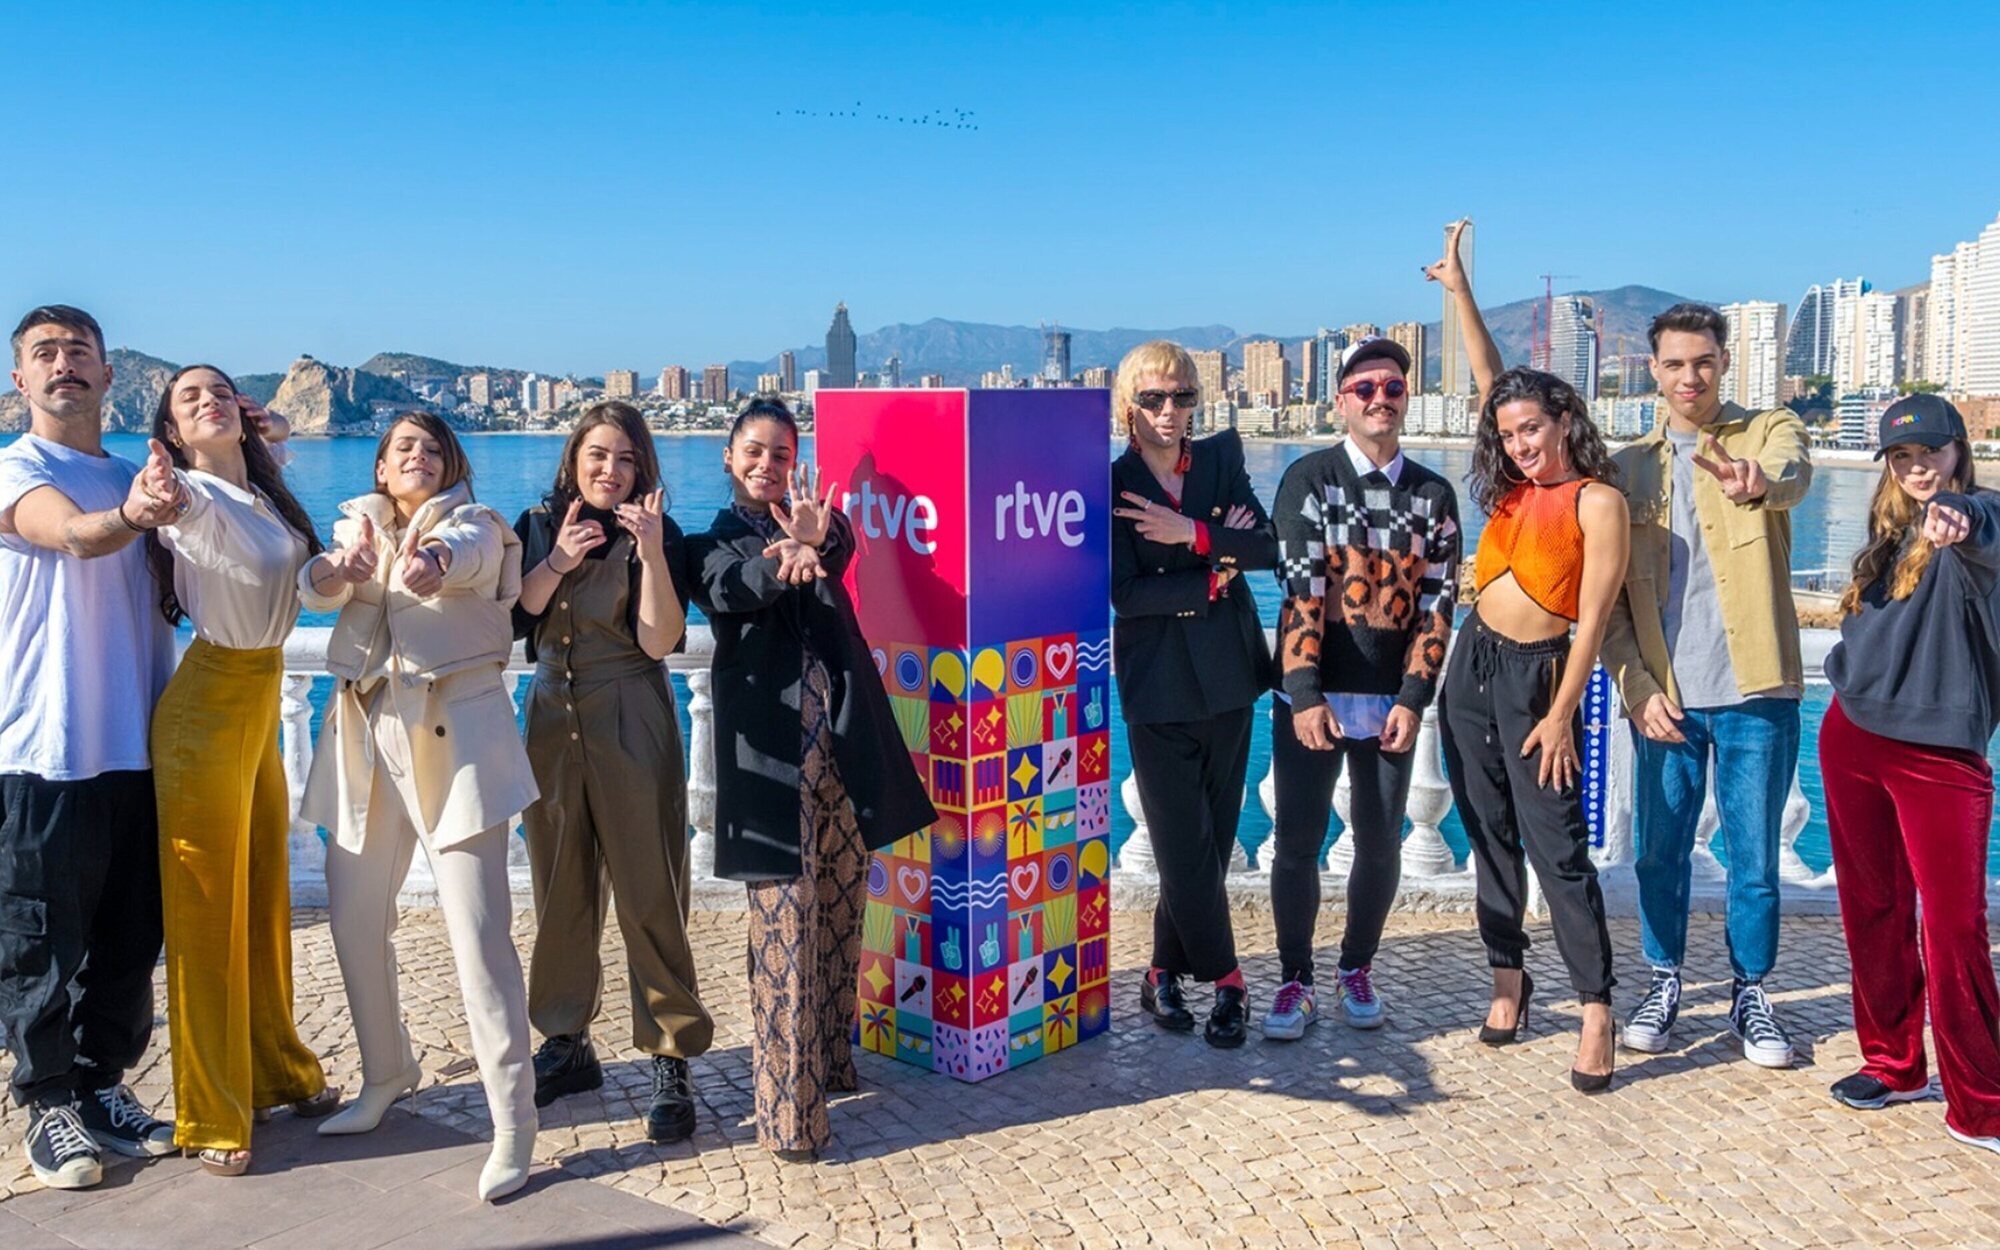 María Eizaguirre, sobre los finalistas del Benidorm Fest: "Si apoyan a Chanel, nadie debería cuestionar nada"